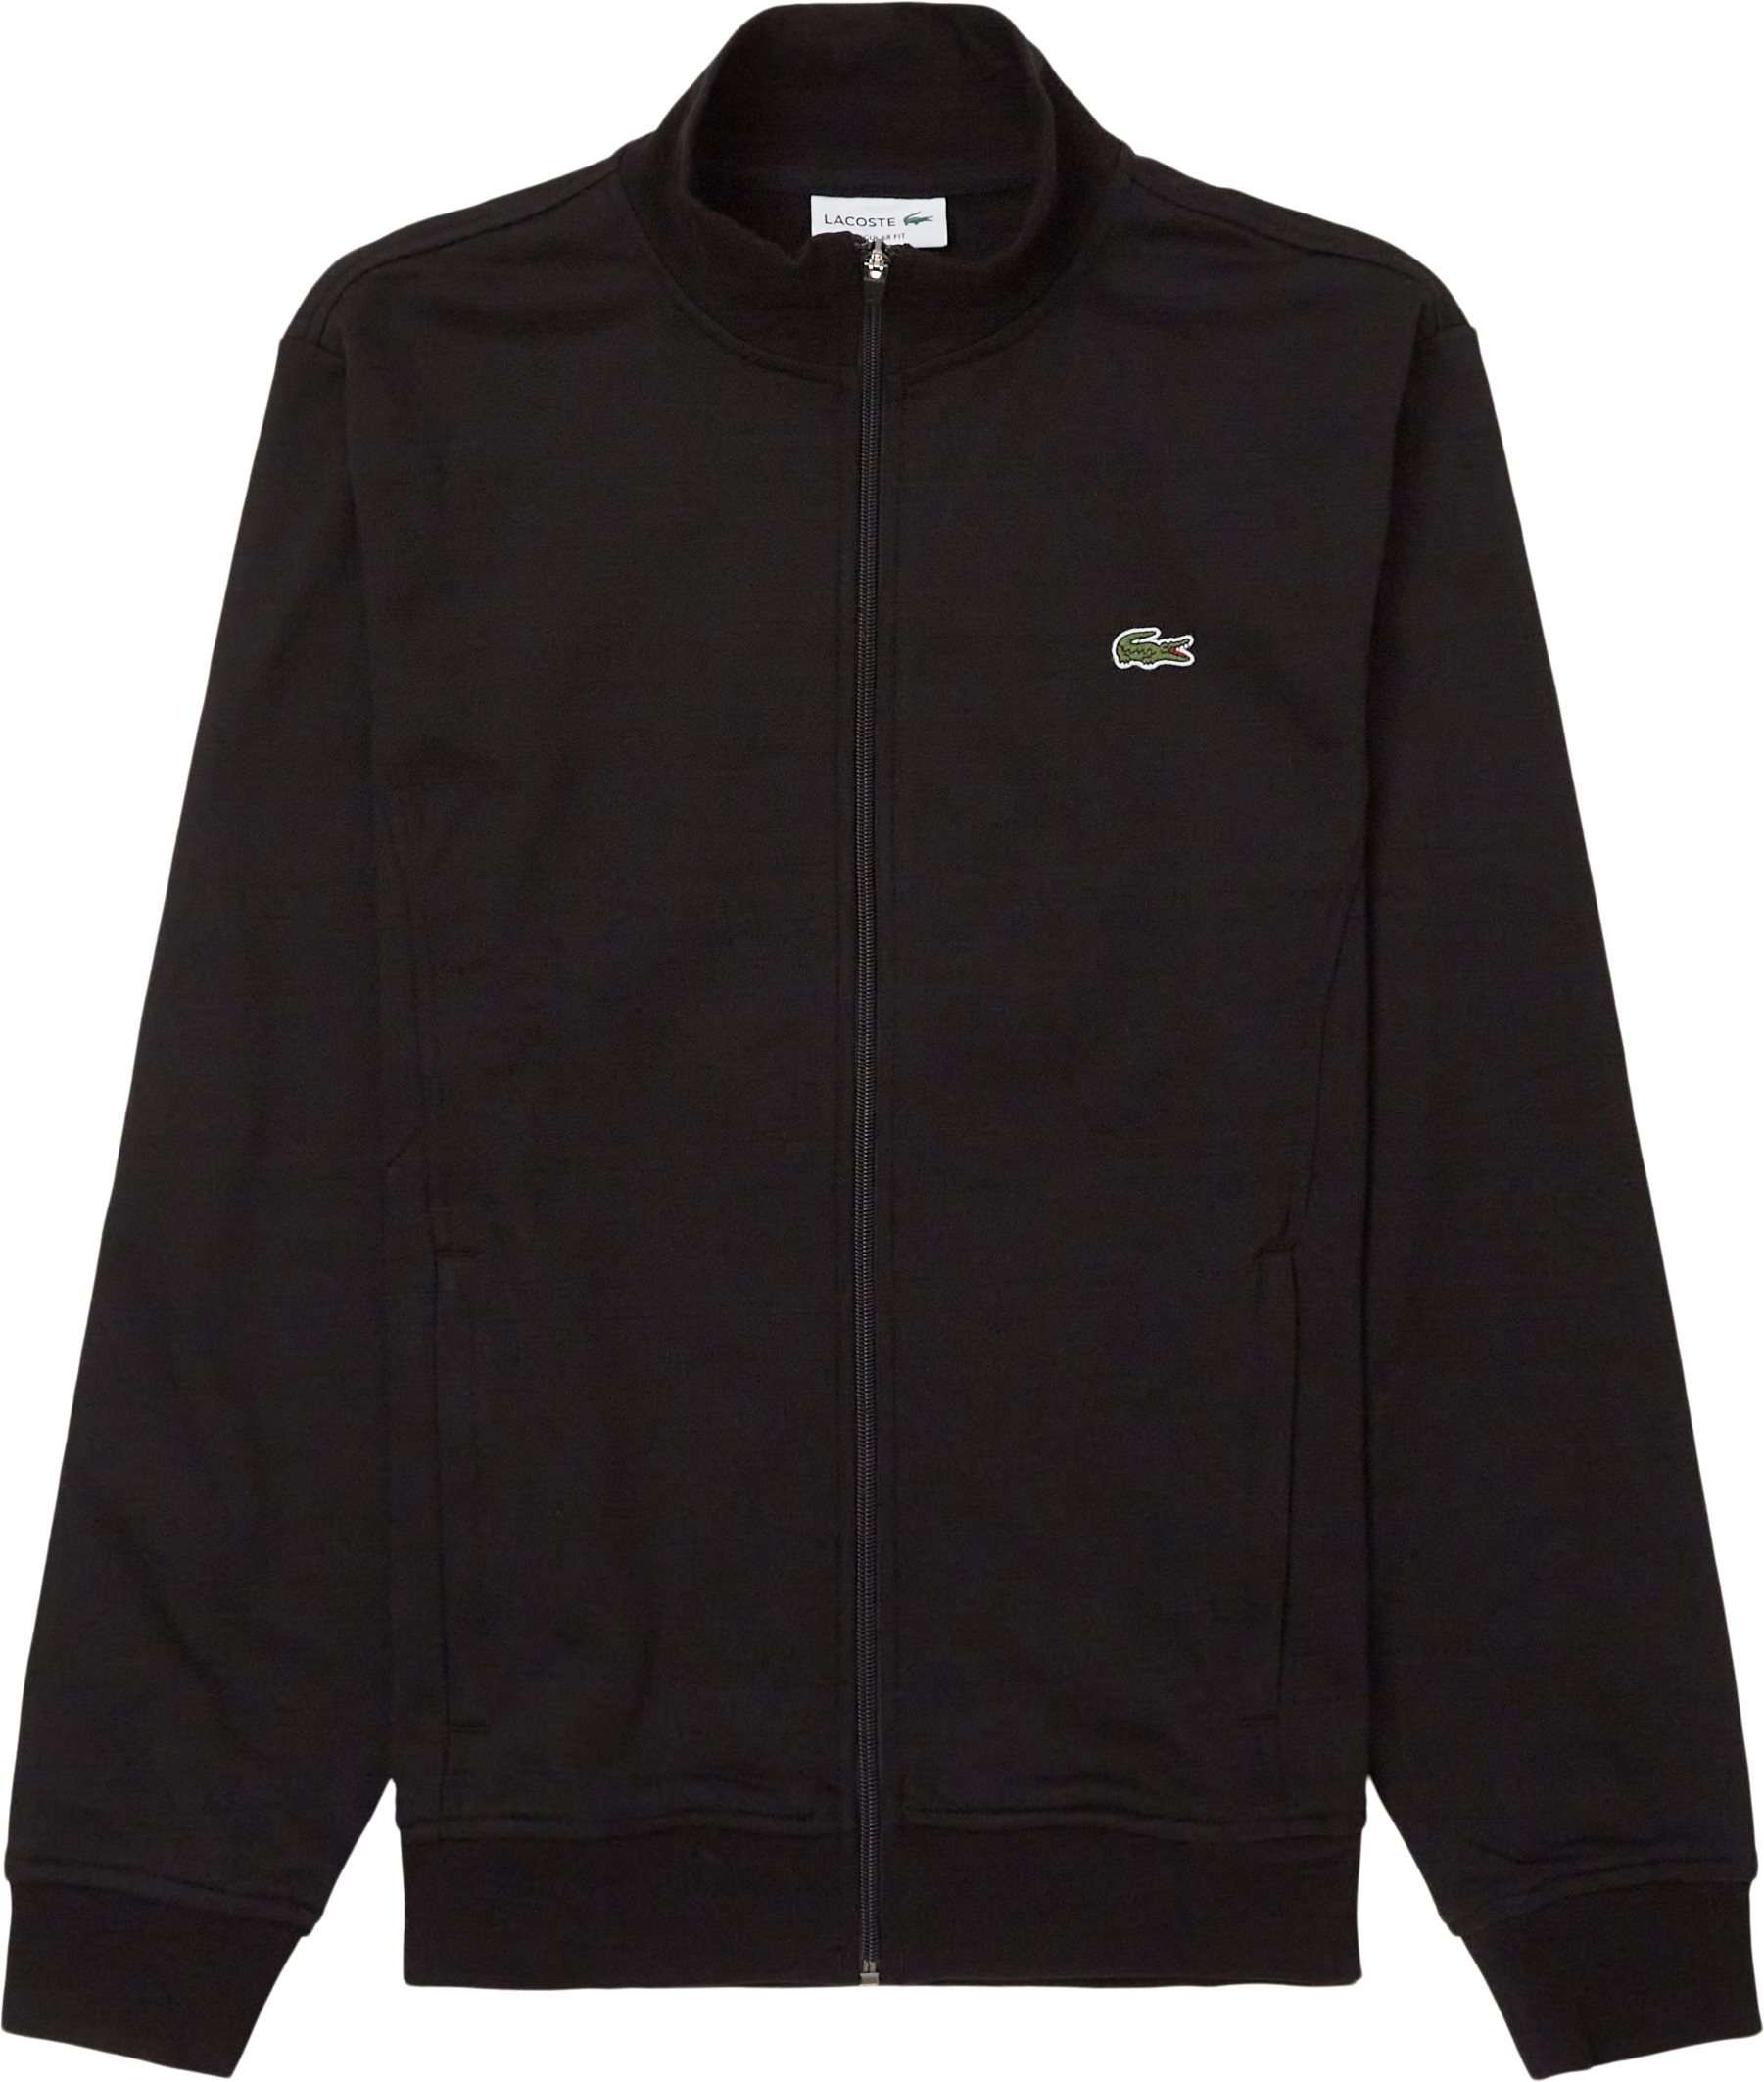 Sh1559 Zip Sweatshirt - Sweatshirts - Regular fit - Svart